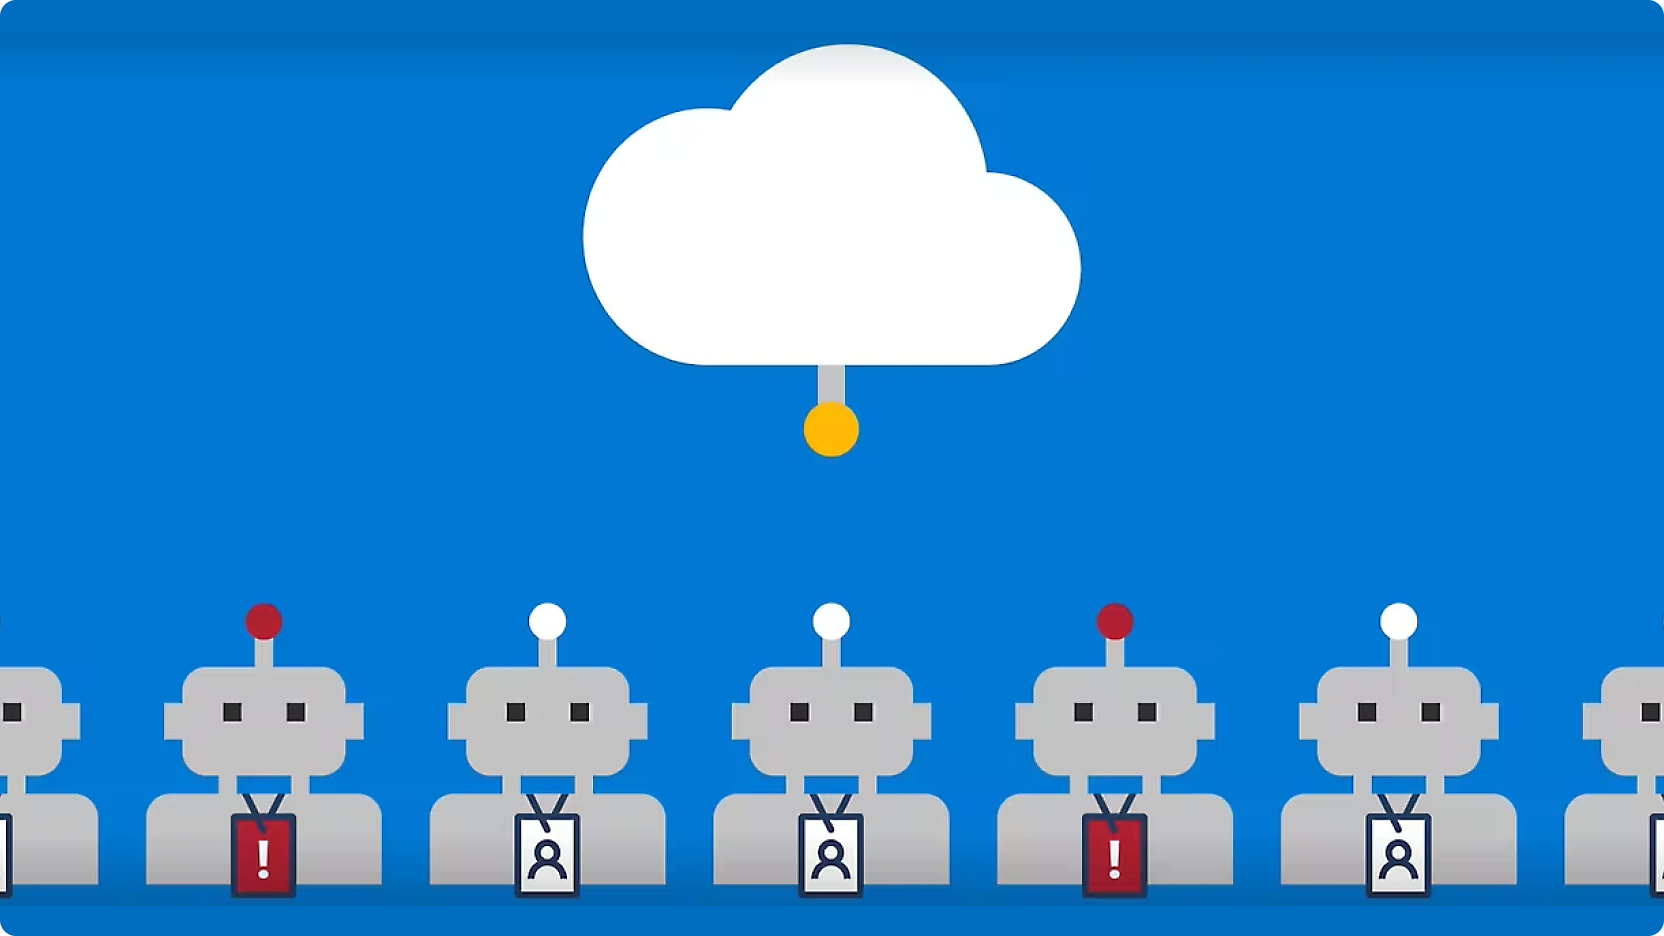 圖中描繪了一排機器人，頭頂有紅色按鈕，並以線條連接到中央雲端